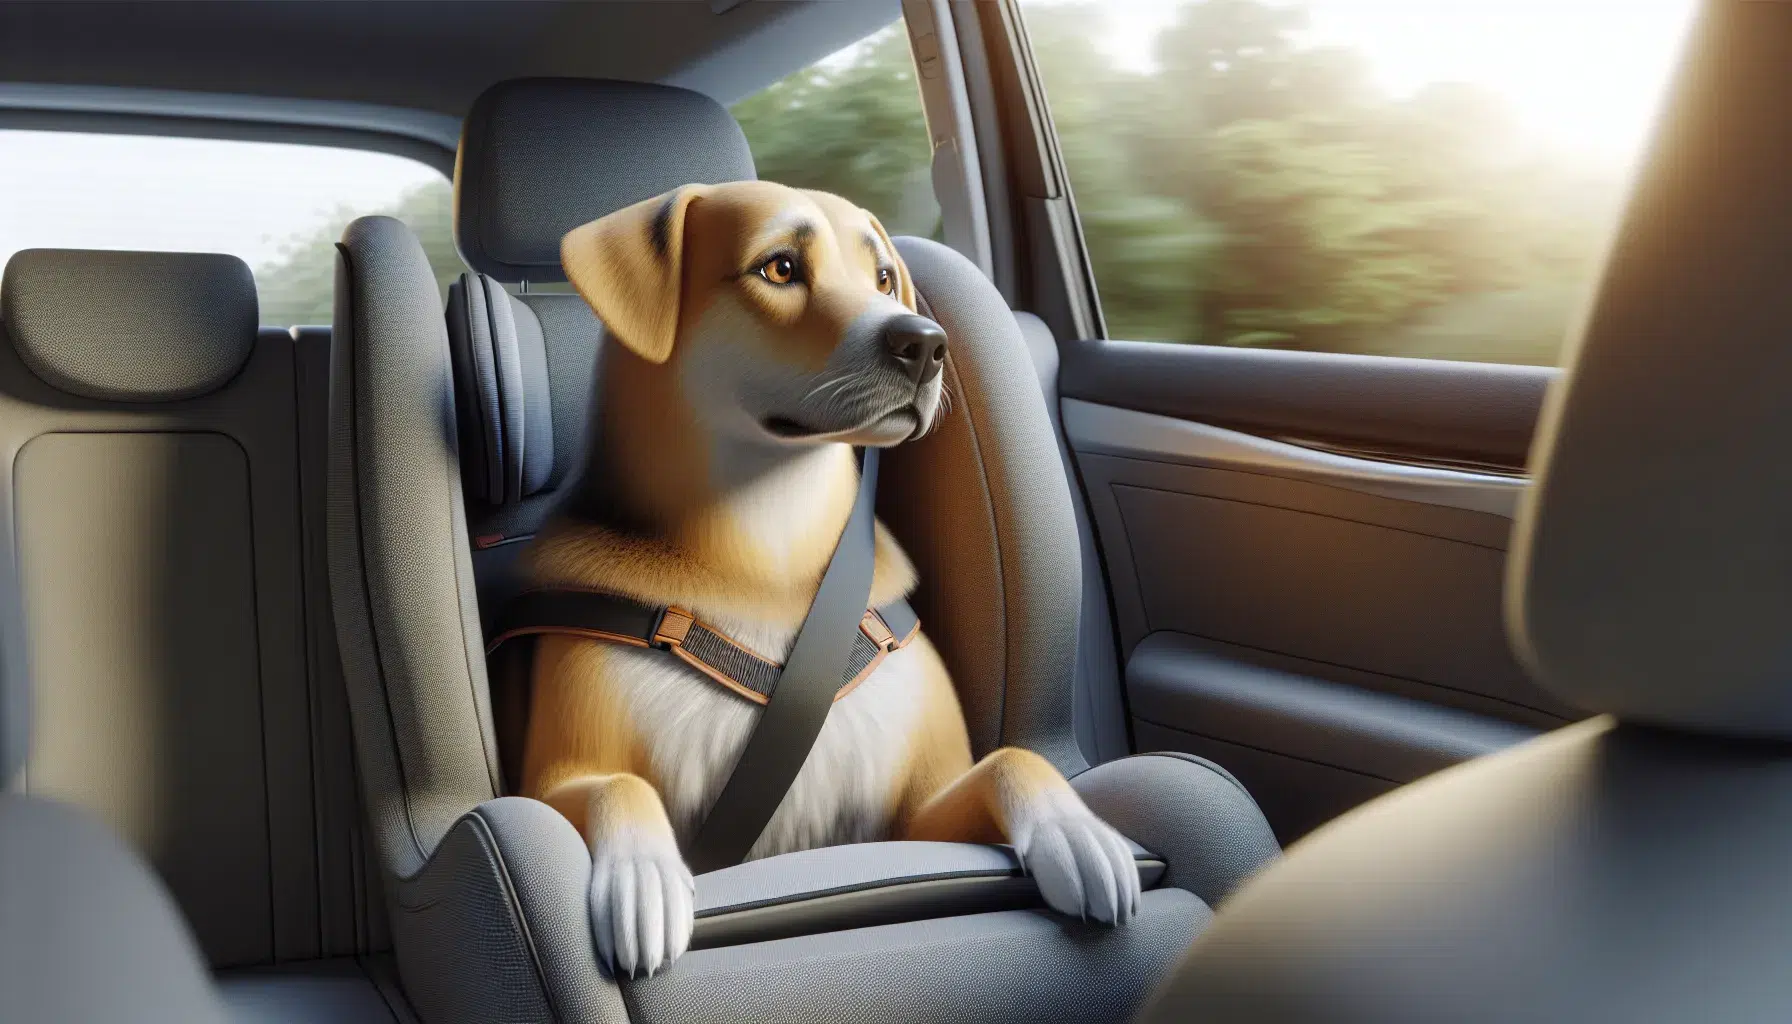 Imagen de un perro relajado en el asiento del coche mirando por la ventana durante un viaje, mostrando signos de calma y bienestar.